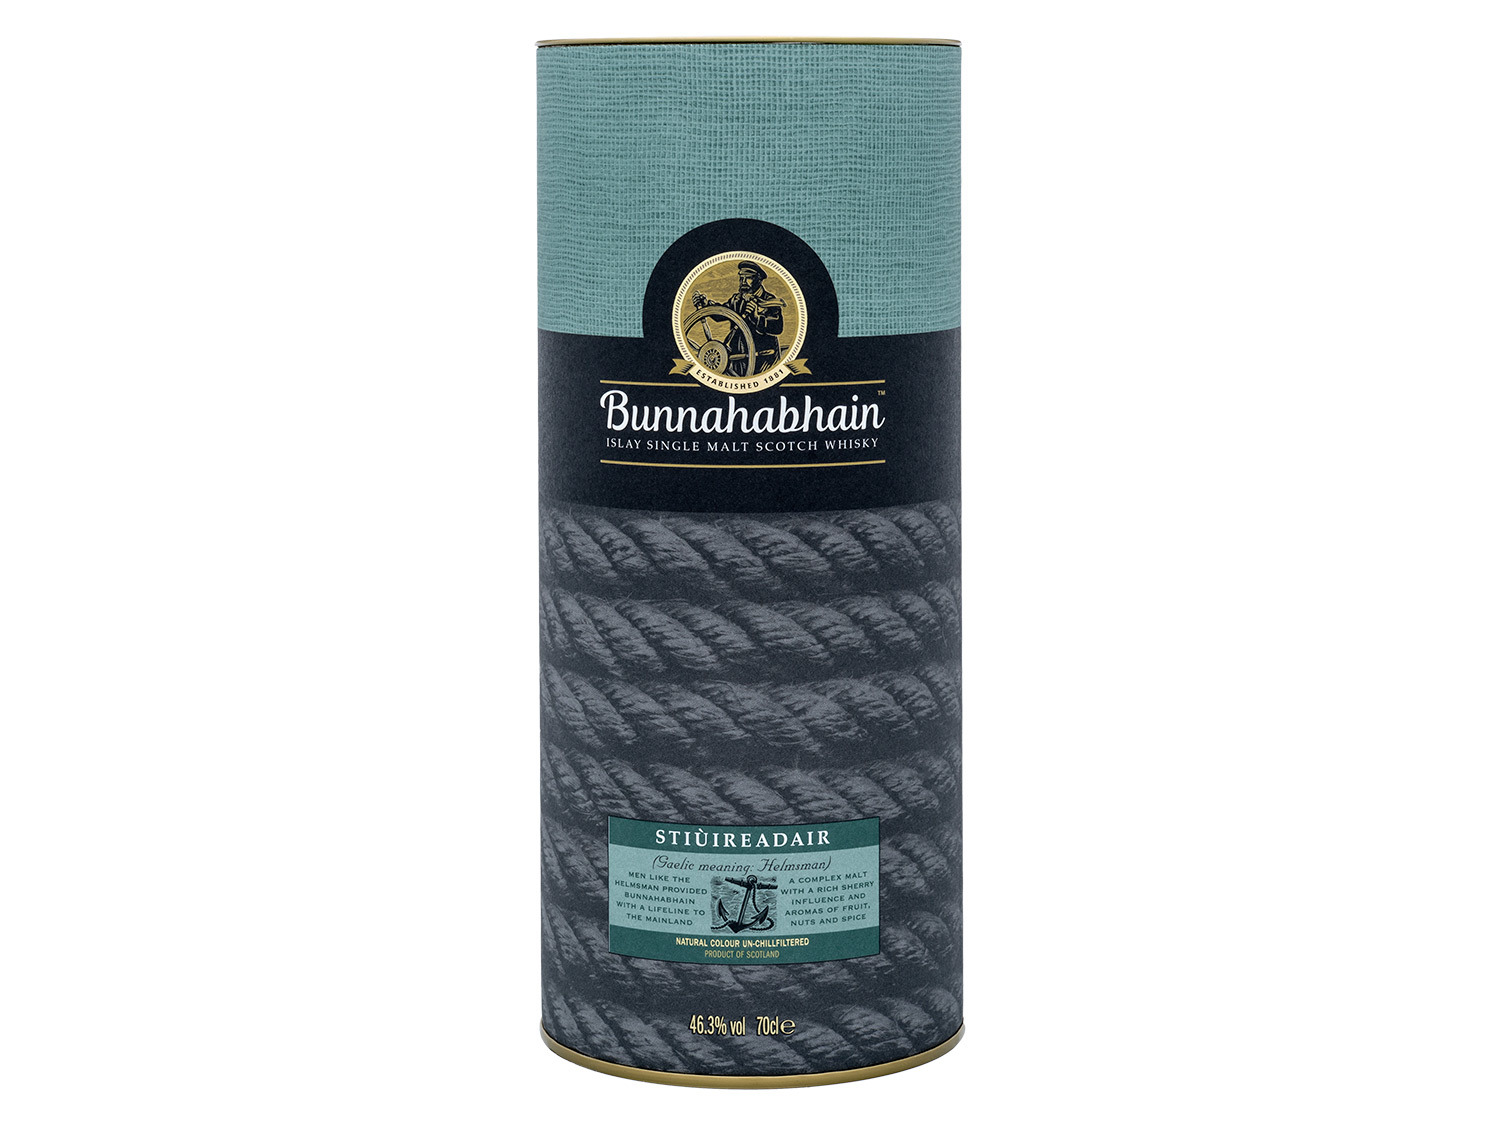 Bunnahabhain Stiùireadair Islay Single Malt Scotch Whisky 46,3% Vol